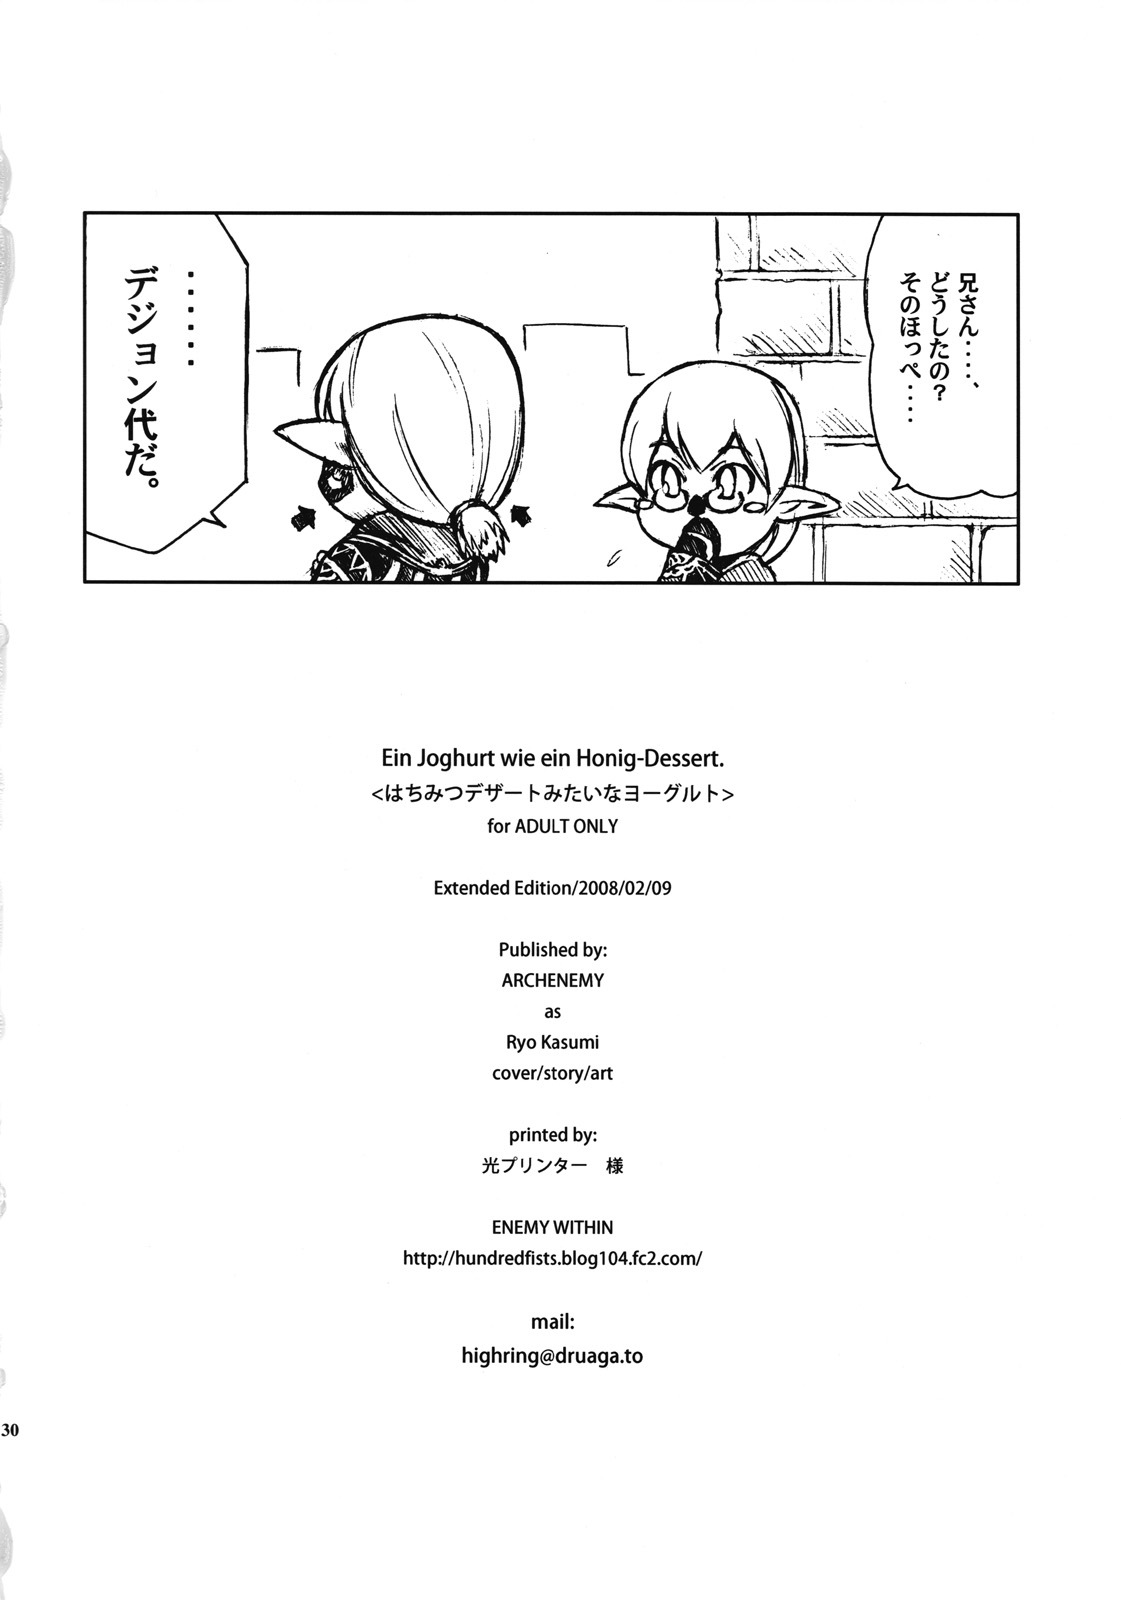 [ARCHENEMY (Kasumi Ryo)] Ein Joghurt wie ein Honig-Dessert. EXTENDED EDITION (Final Fantasy XI) [English] [desudesu] page 29 full